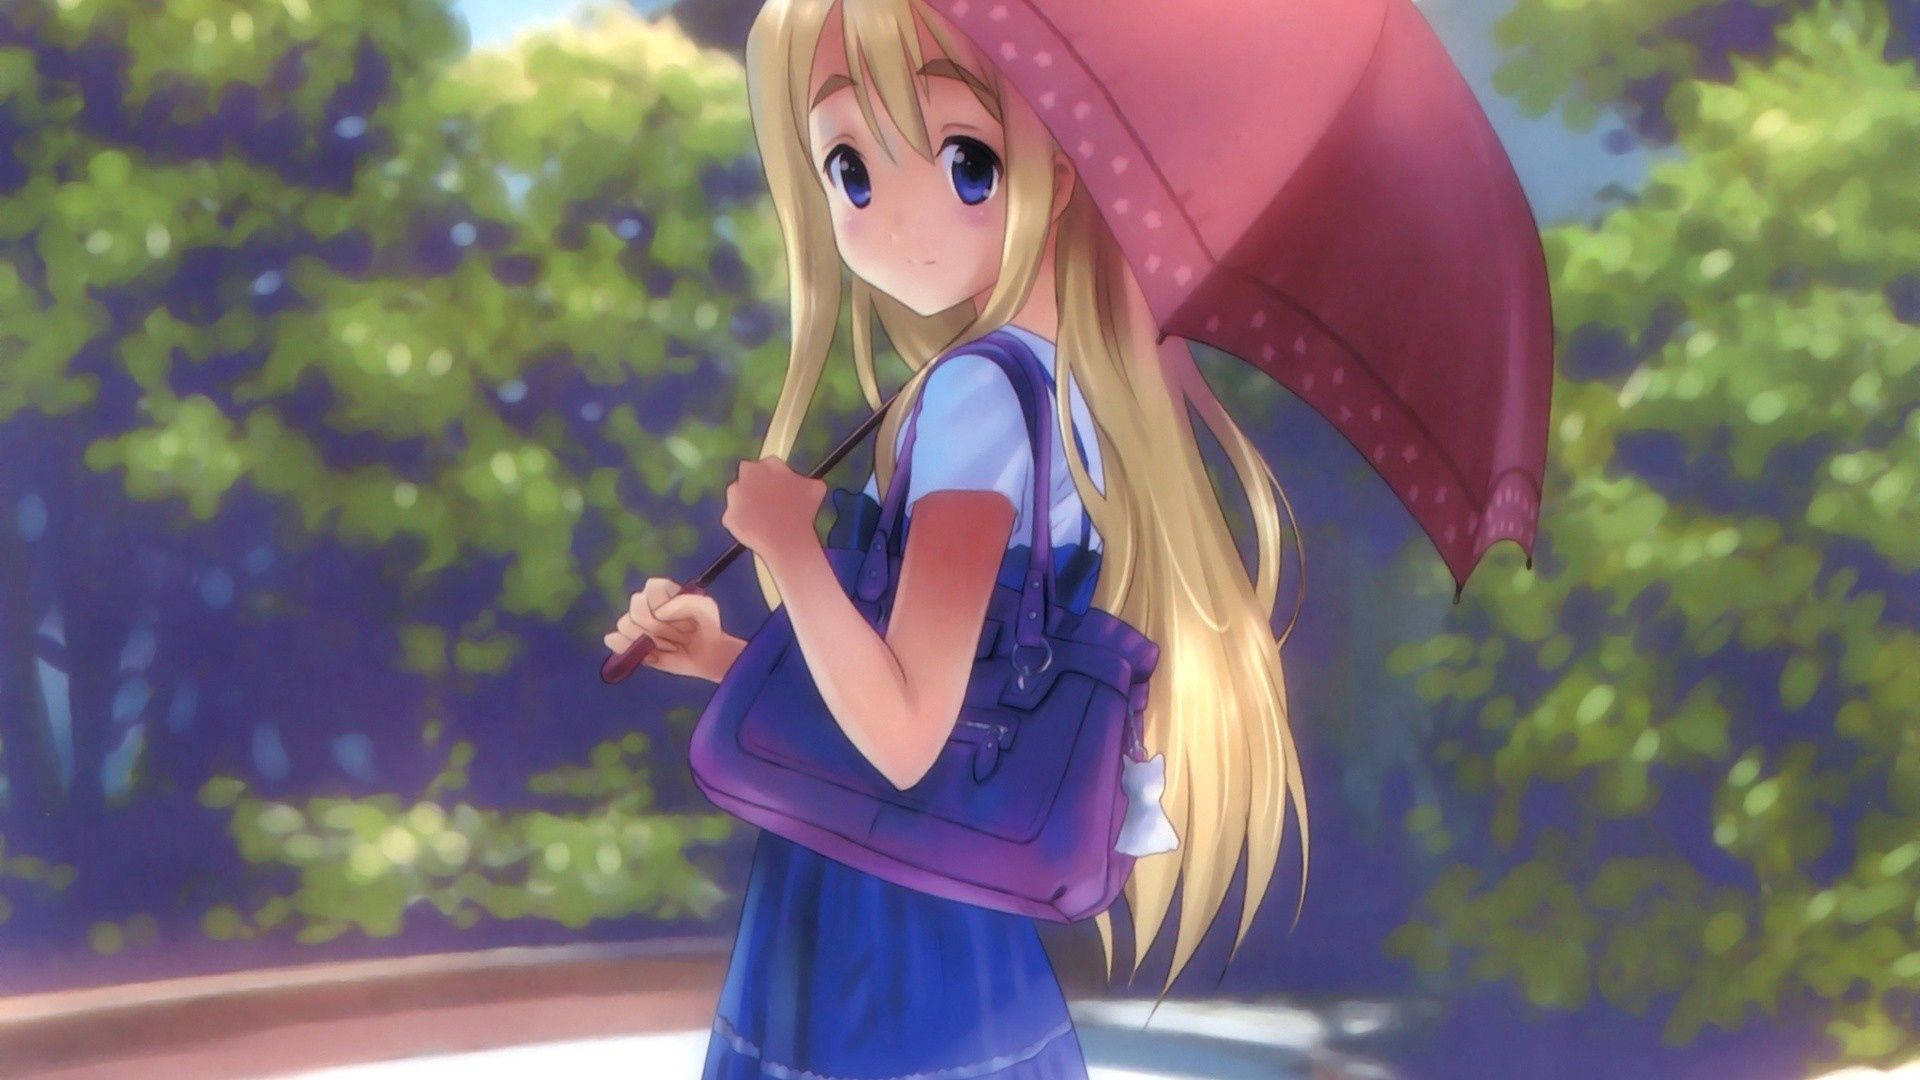 Pretty Blonde Anime Umbrella Girl Wallpaper